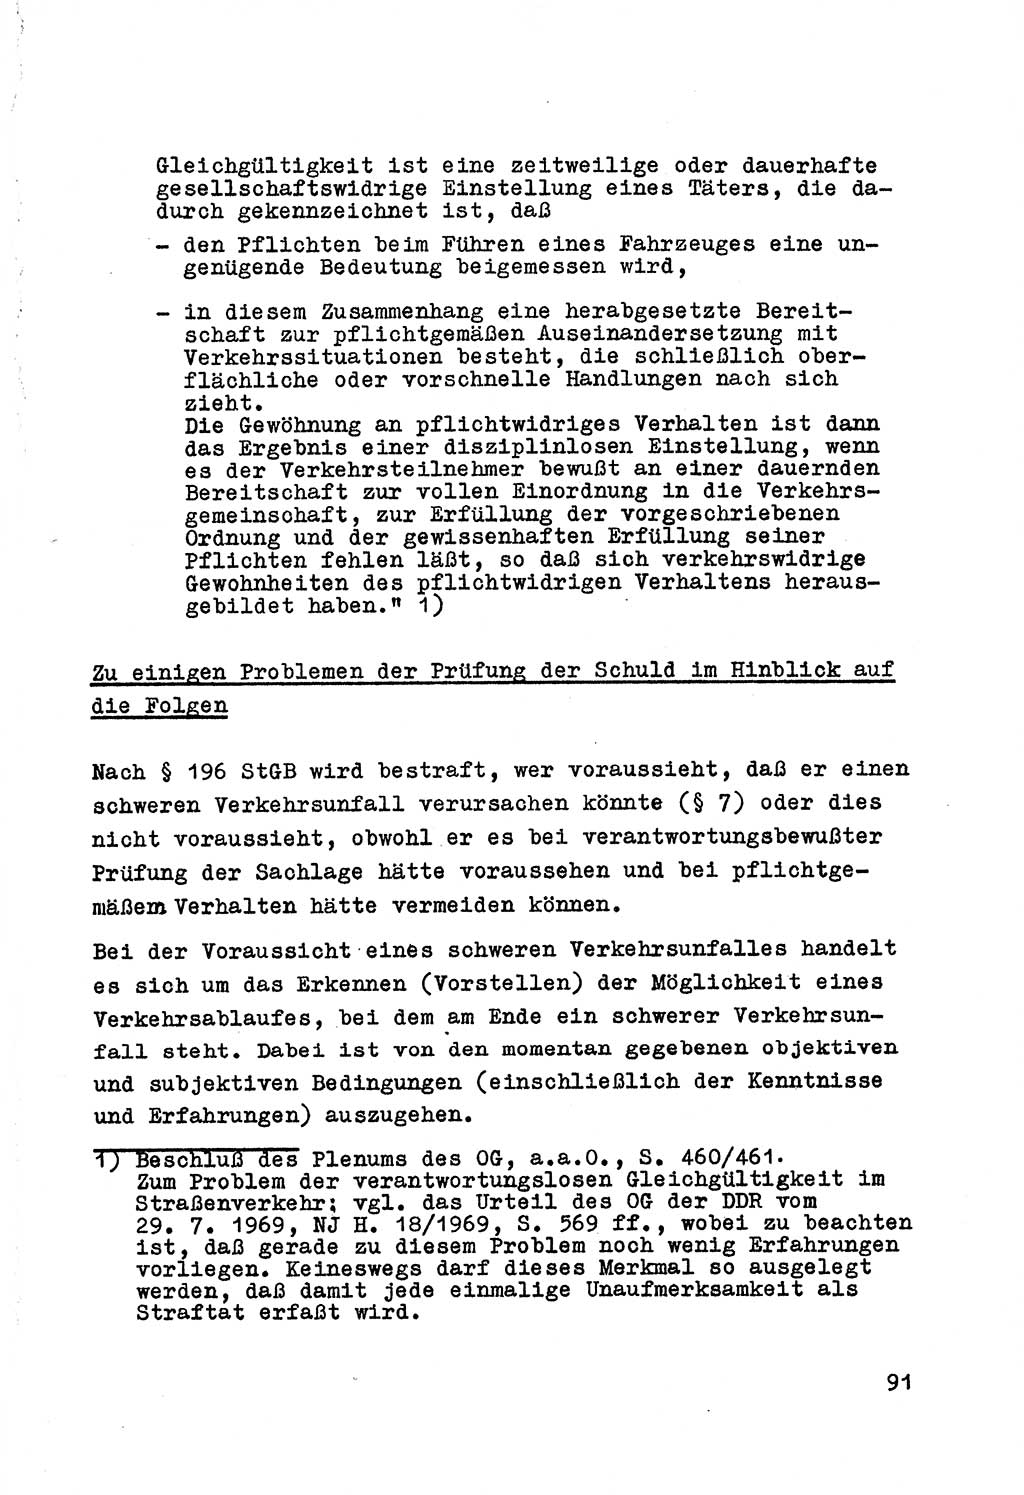 Strafrecht der DDR (Deutsche Demokratische Republik), Besonderer Teil, Lehrmaterial, Heft 7 1970, Seite 91 (Strafr. DDR BT Lehrmat. H. 7 1970, S. 91)